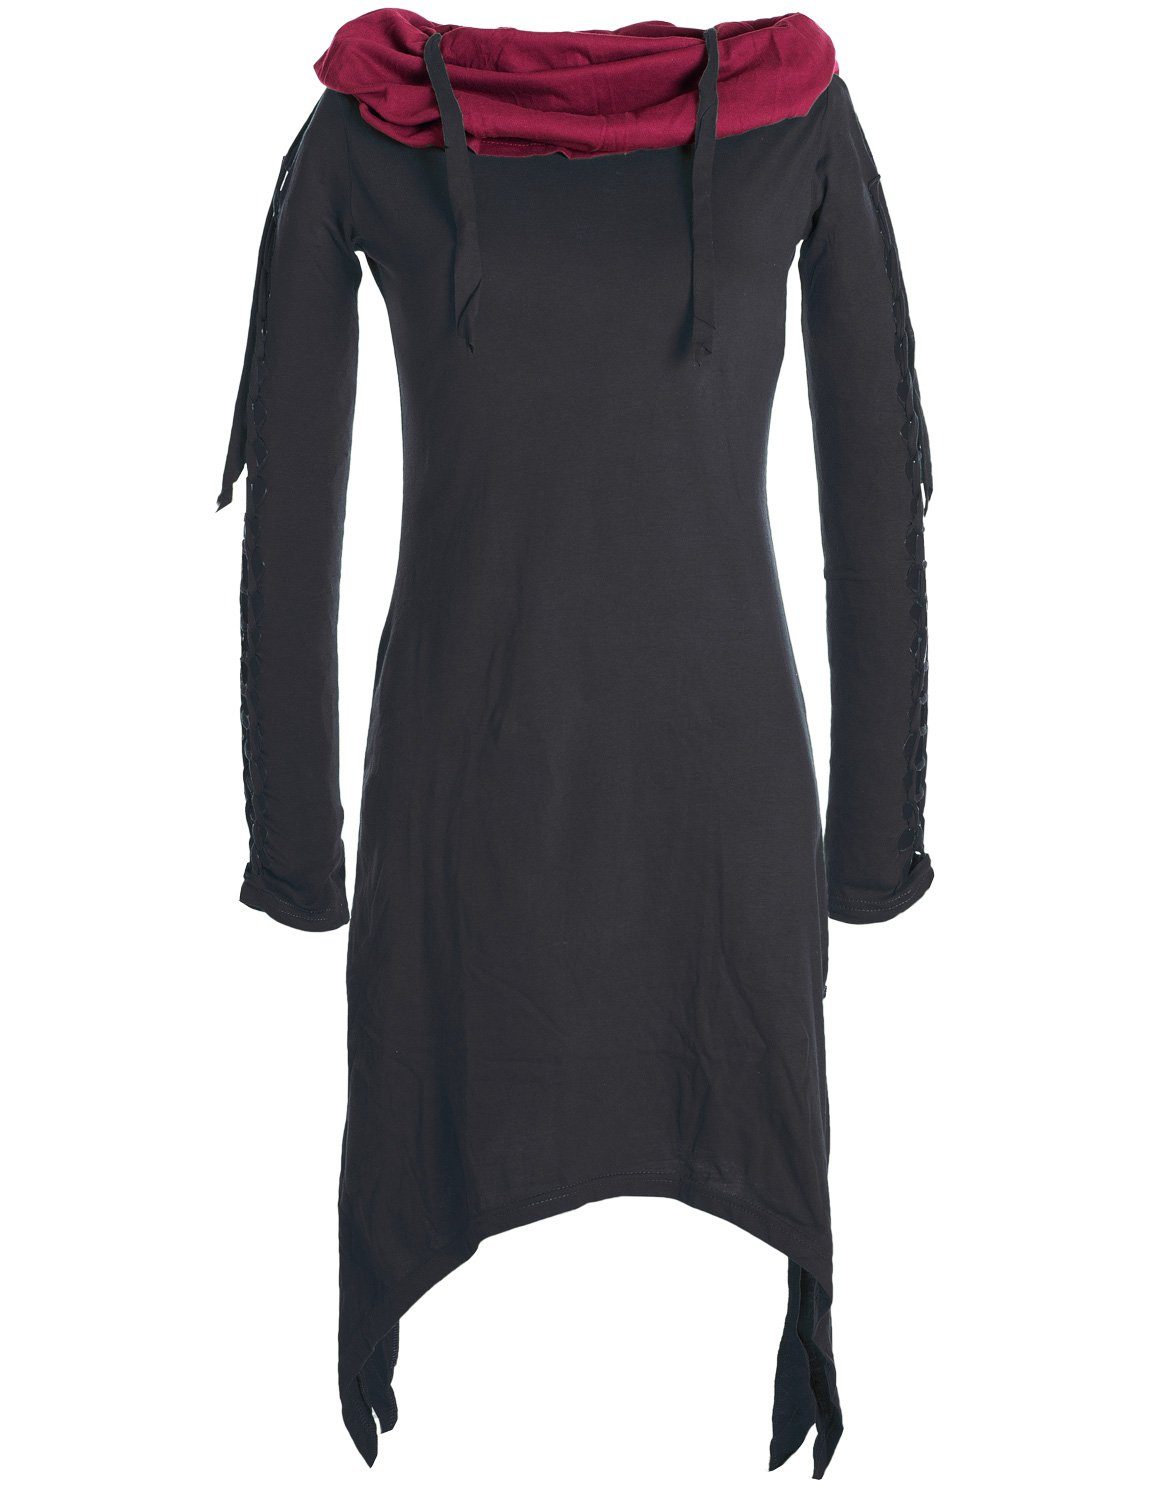 Vishes Zipfelkleid Zweifarbiges langarm Kleid aus Biobaumwolle mit Schalkragen Ethne, Goa, Boho, Elfen Style schwarz